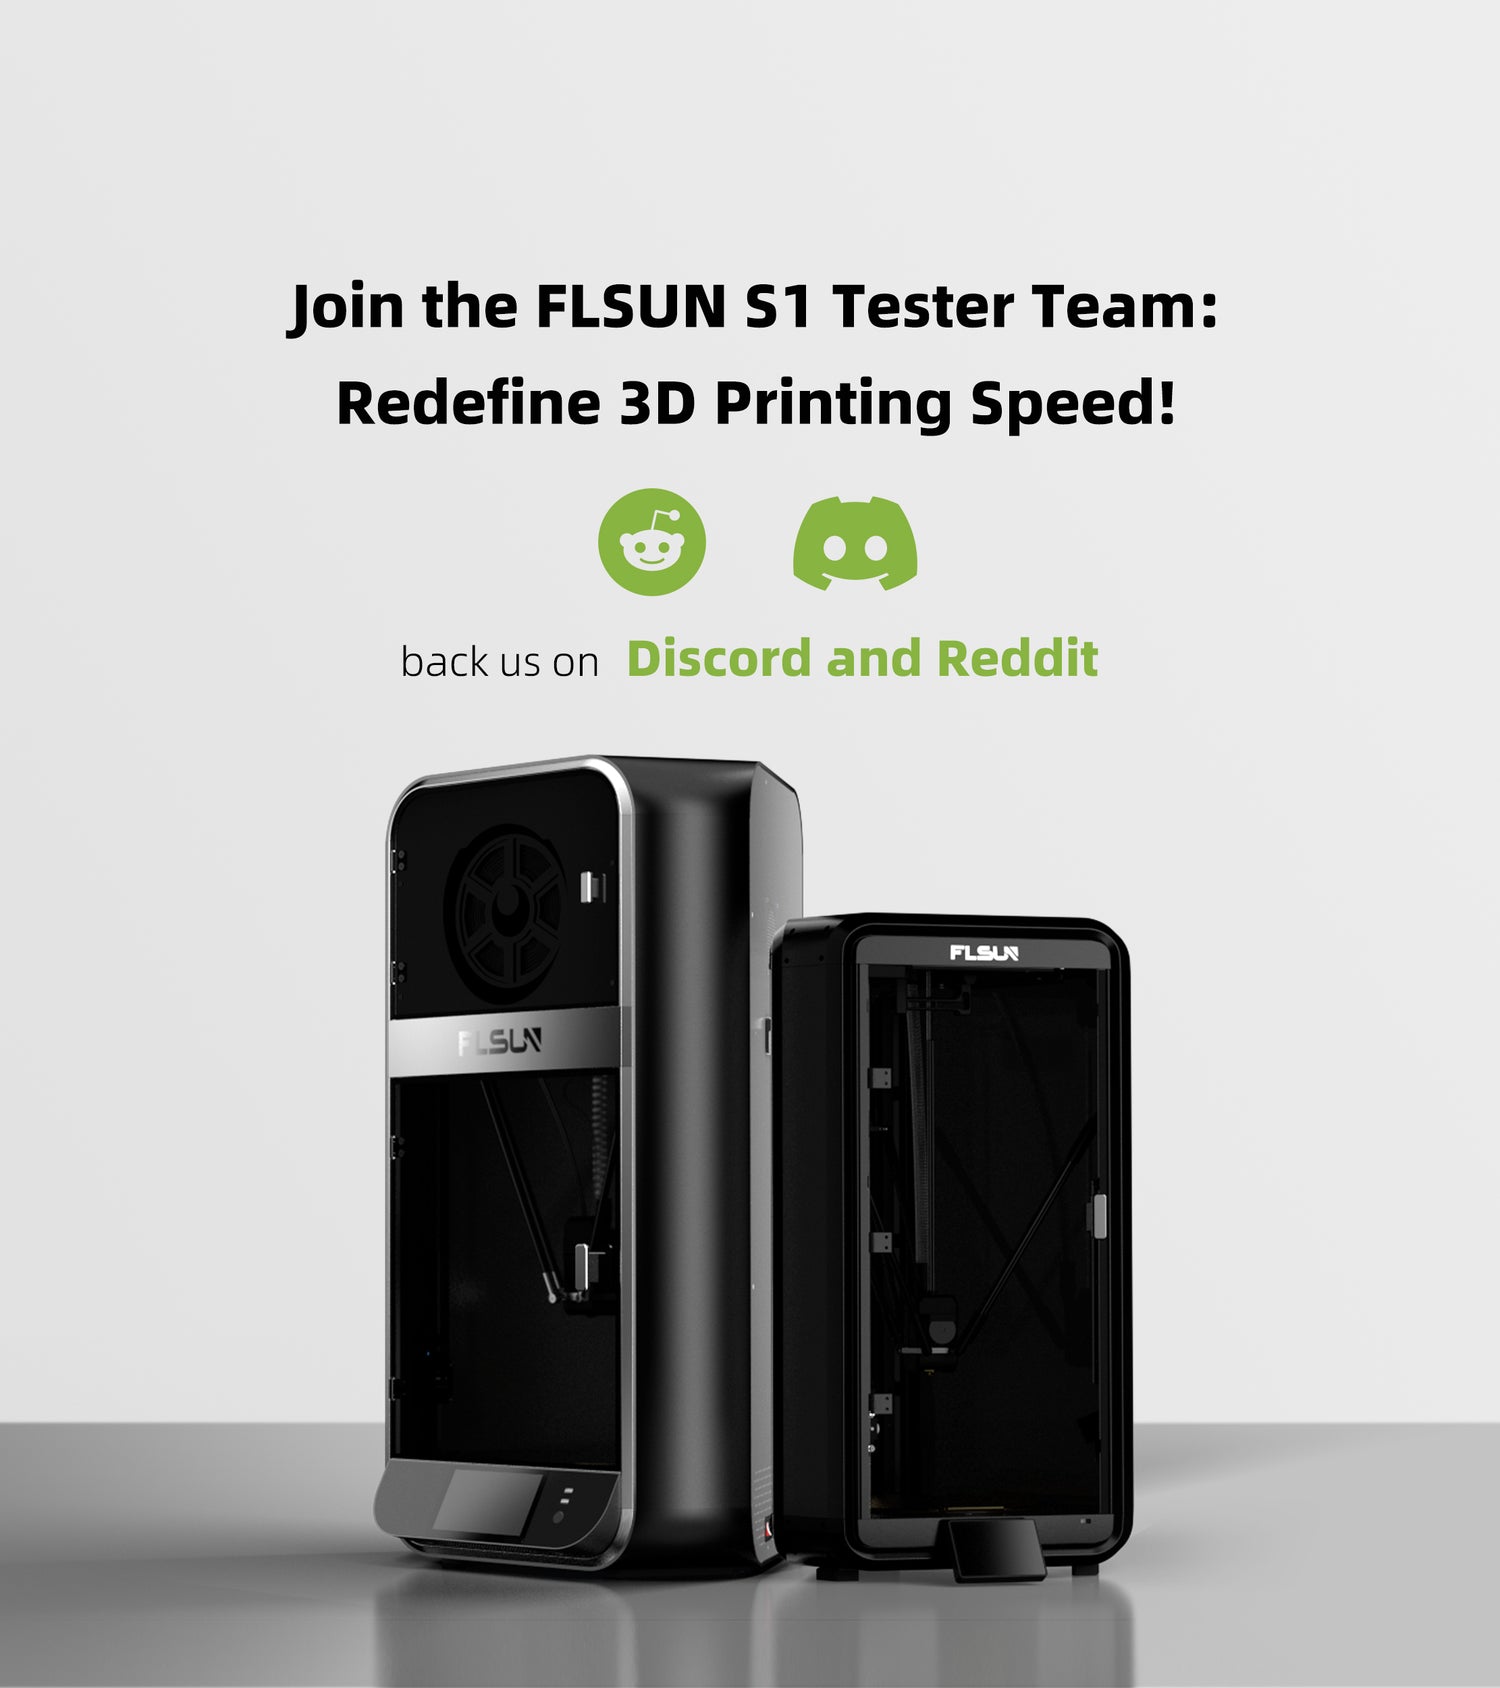 FLSUN3D FLSUN 3D Large Area 3D Printer - reviews, specs, price